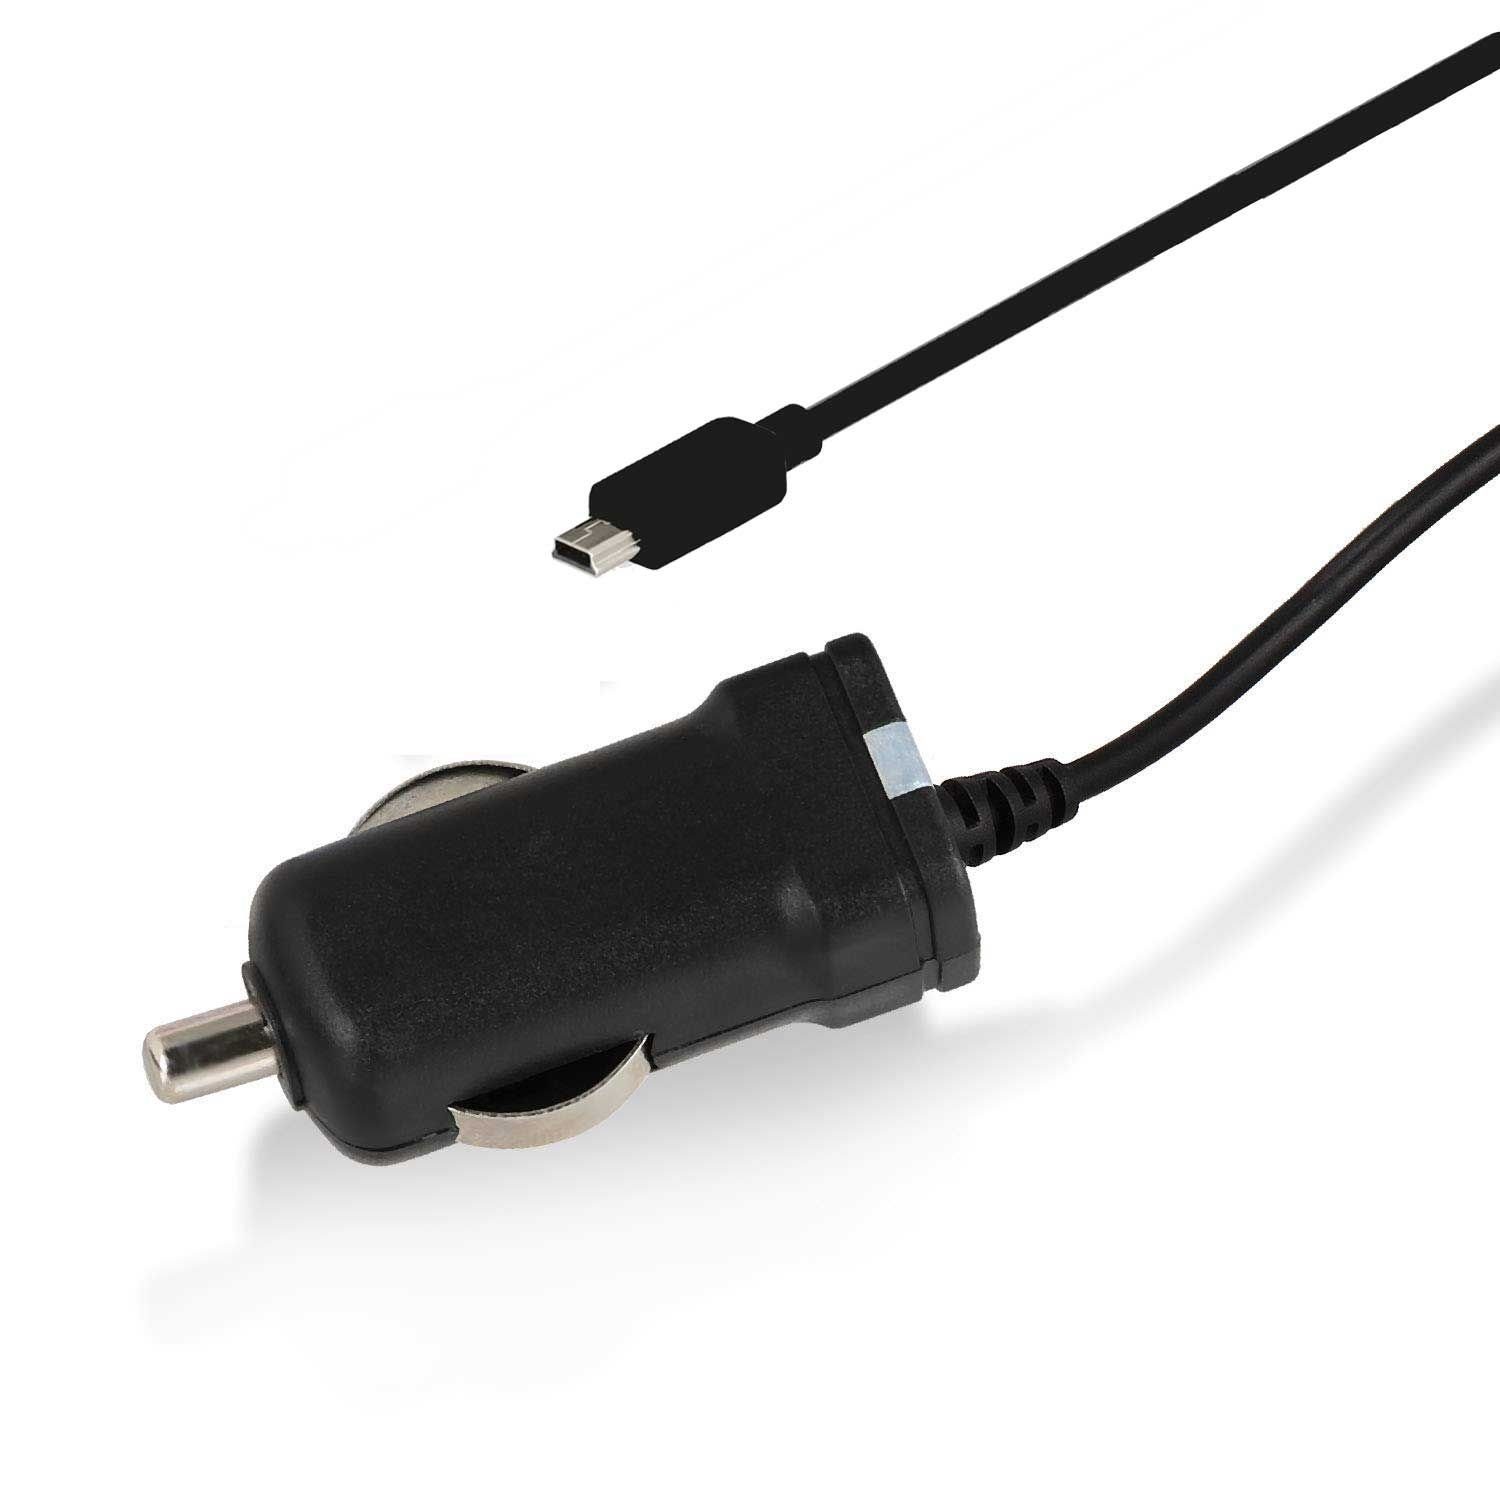 Wicked Chili und miniUSB für 43 USB, integrierter zu Becker Z215 TMC mit 100 Zigarettenanzünder-Stecker Antenne Mini Ladekabel Z205 Auto-Adapter Z217 Z213 TMC cm, LED-Funktionsanzeige